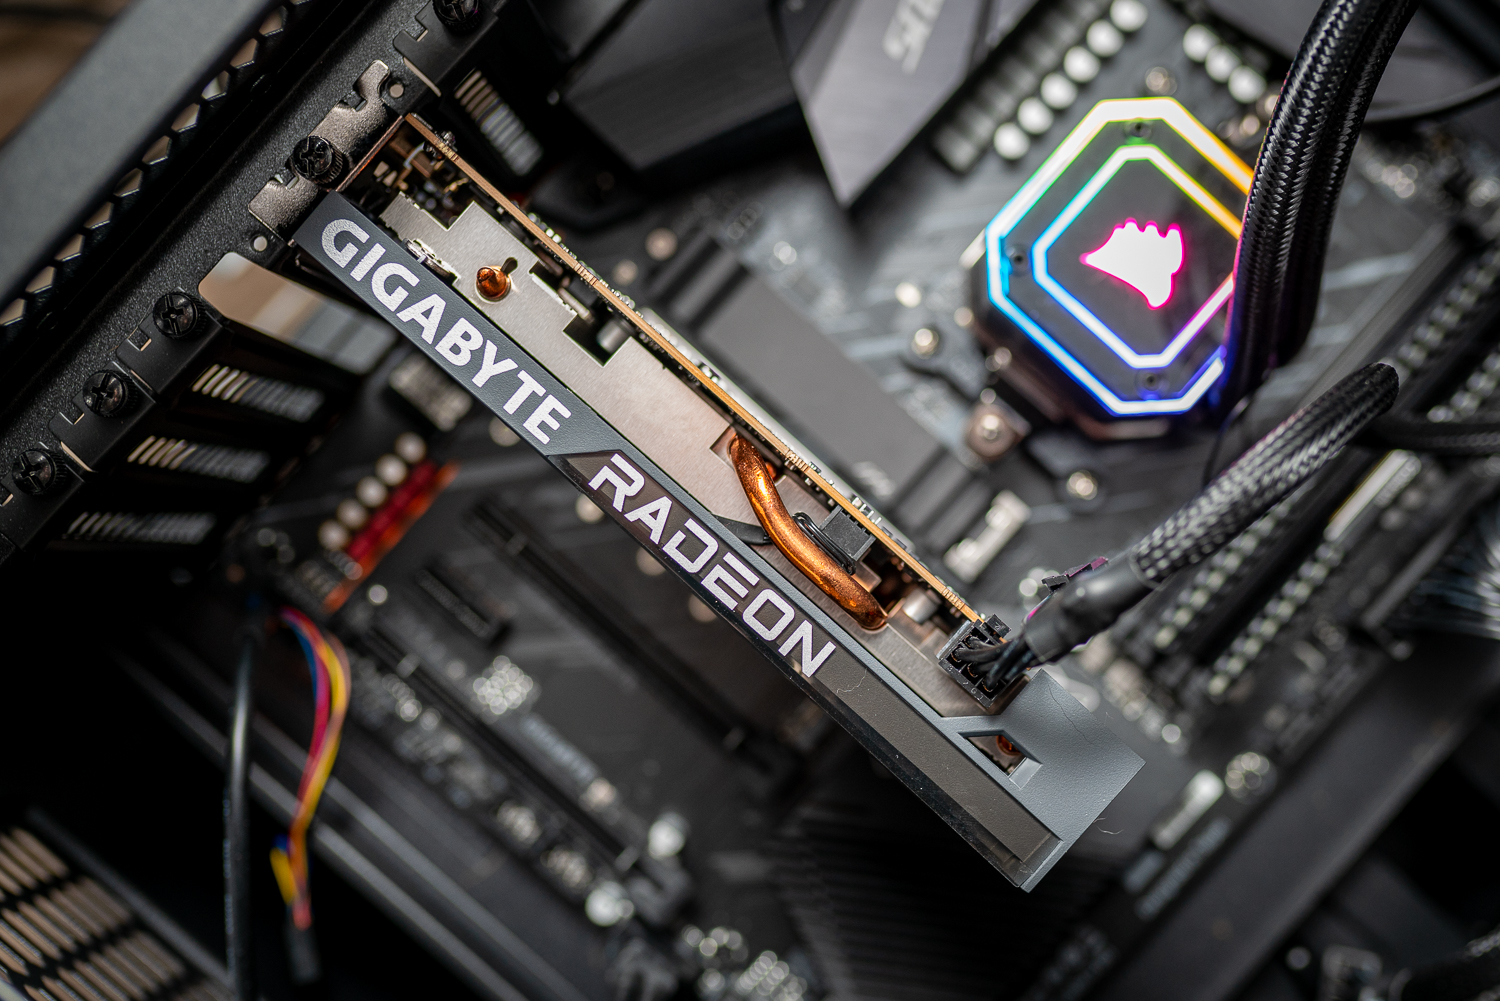 AMD Radeon RX 6950 XT 16 GB Drops To $610 US, 6800 XT 16 GB To